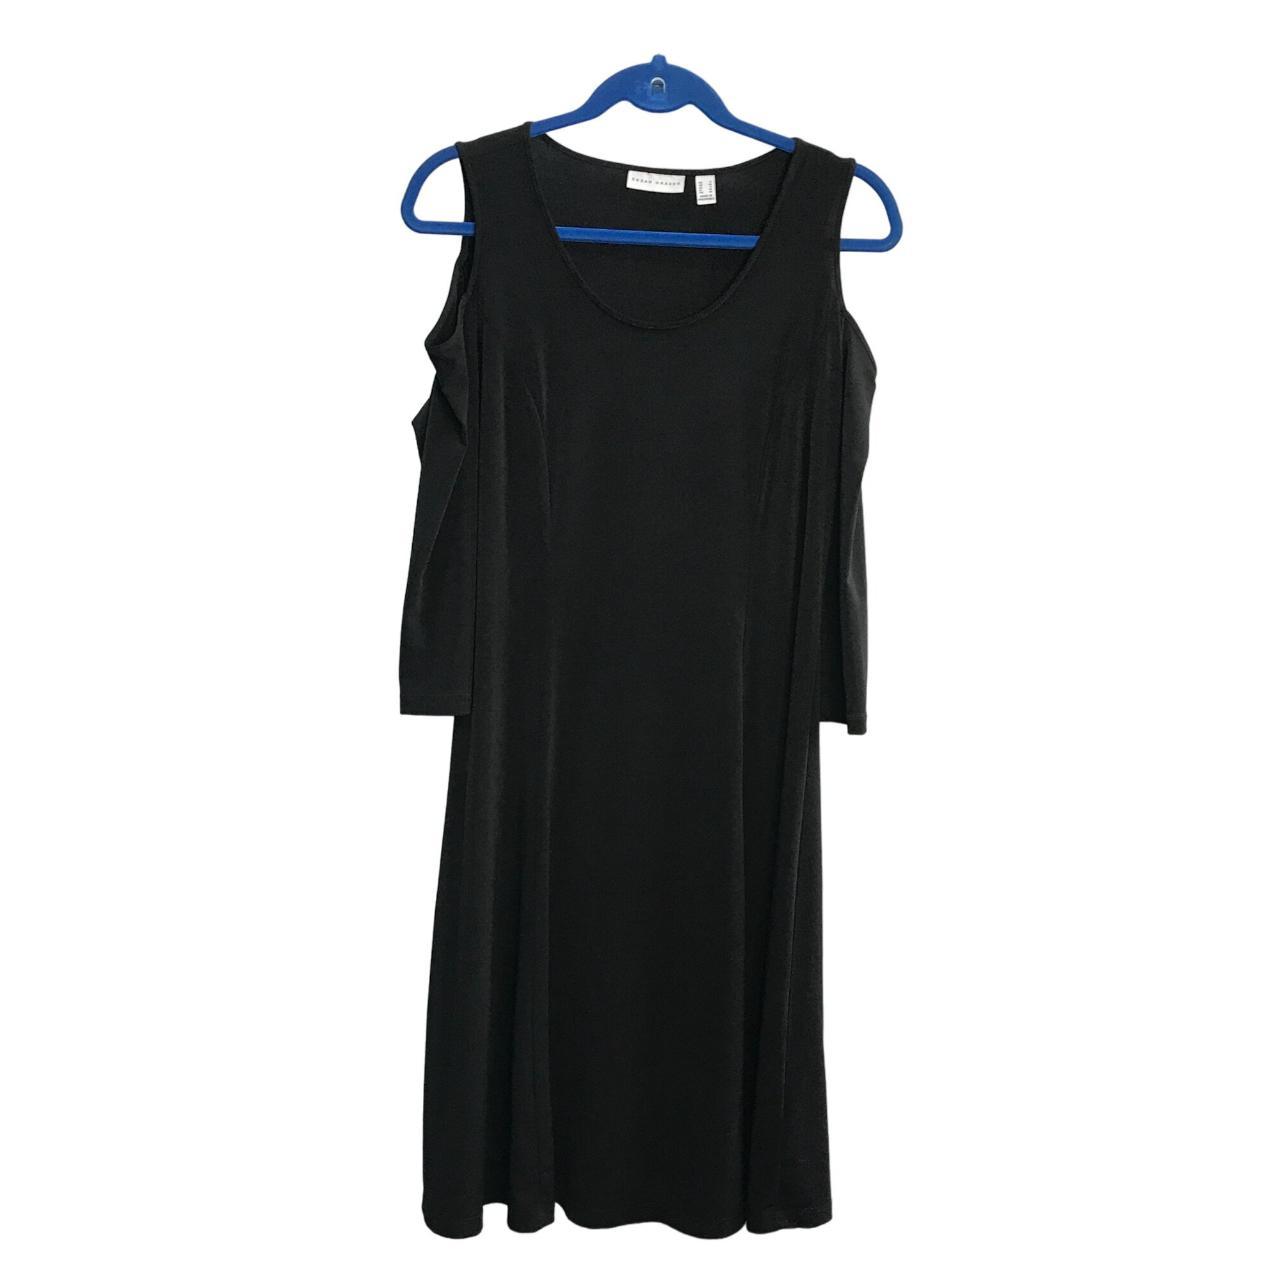 Susan Graver A-Line Cold Shoulder Dress Size S Midi... - Depop